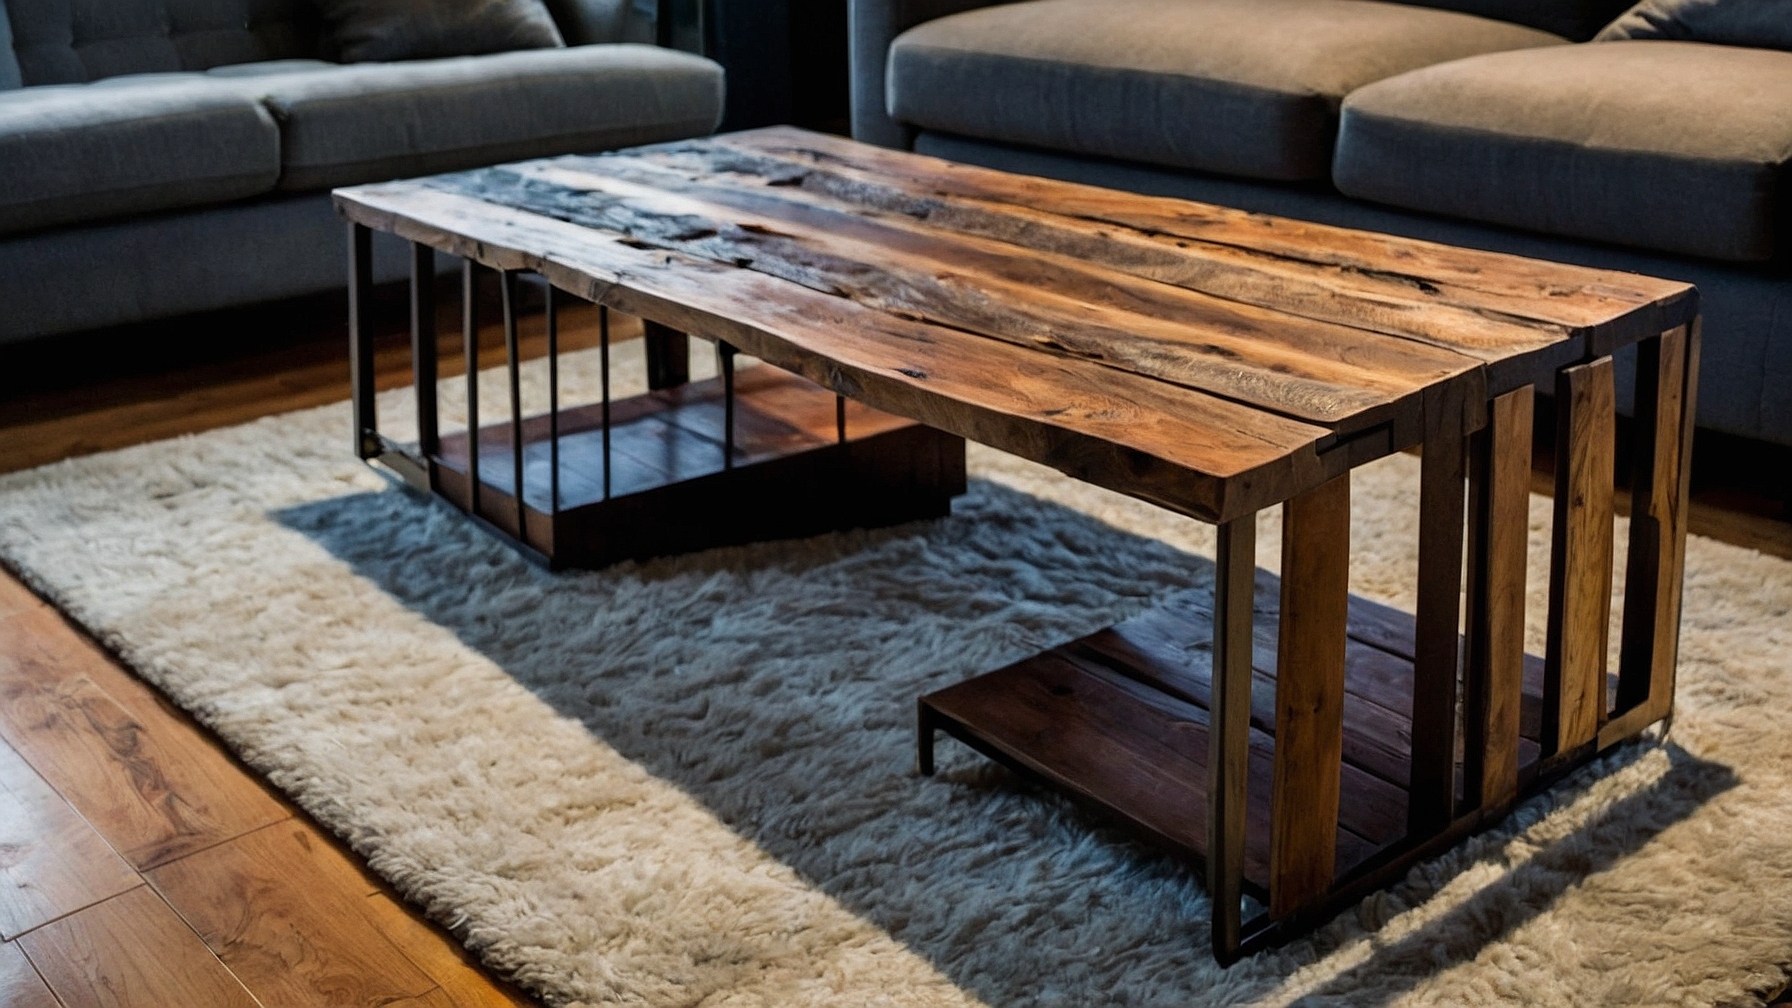 Default Minimalist house Wood Coffee Table Modern Style Timel 1 2